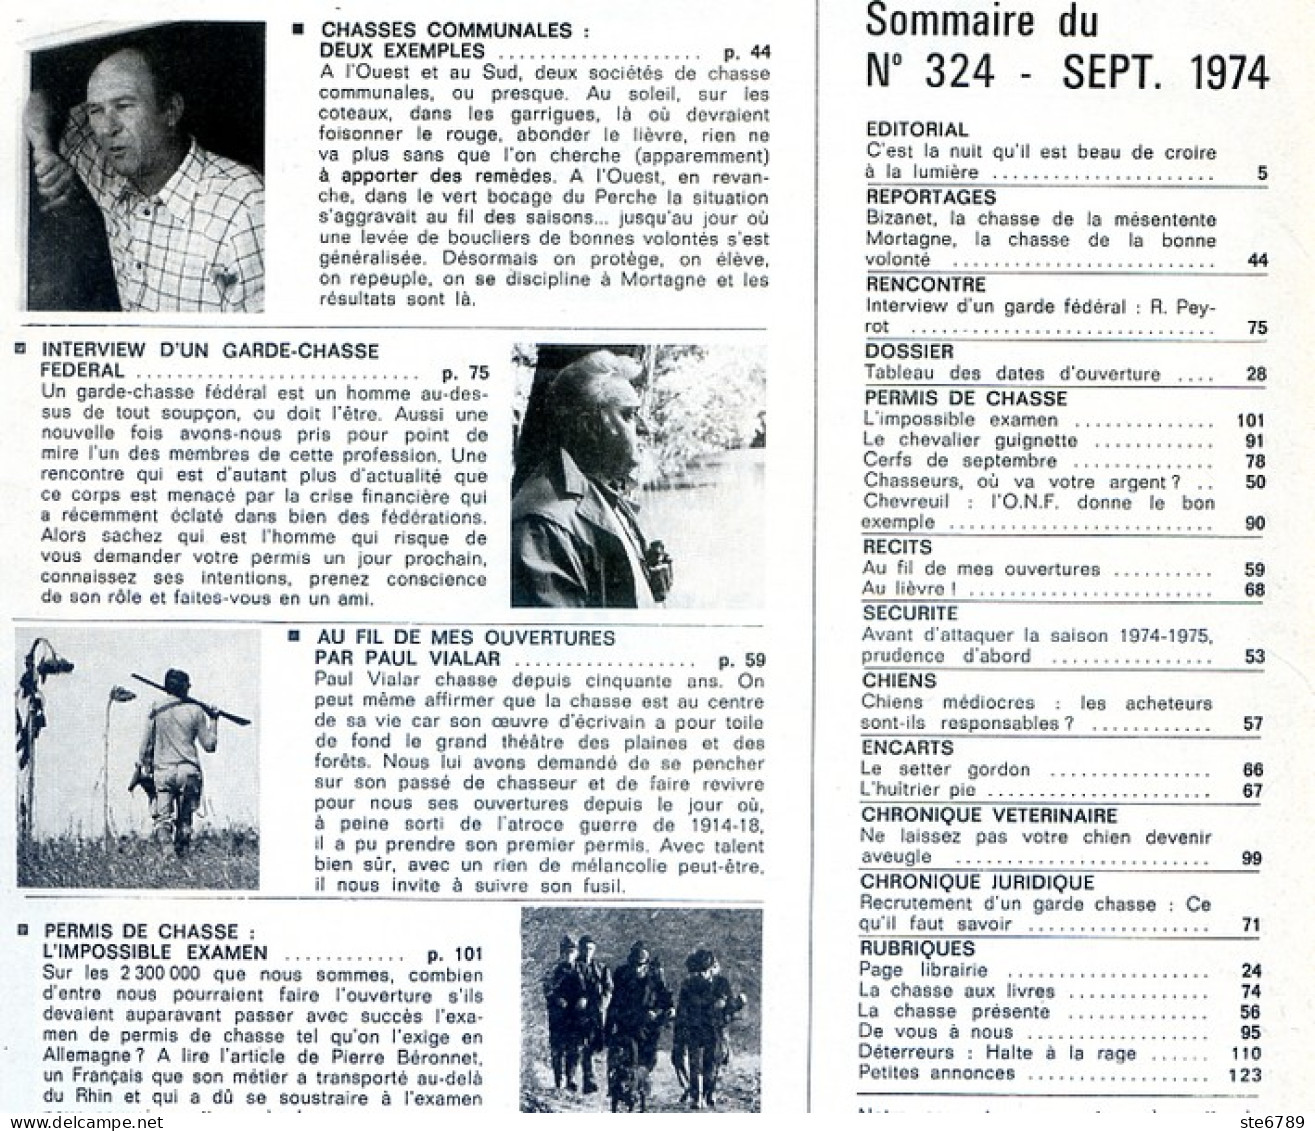 La Revue Nationale De LA CHASSE N° 324 Septembre 1974 Bizanet , Setter Gordon , Chasses Communales - Hunting & Fishing